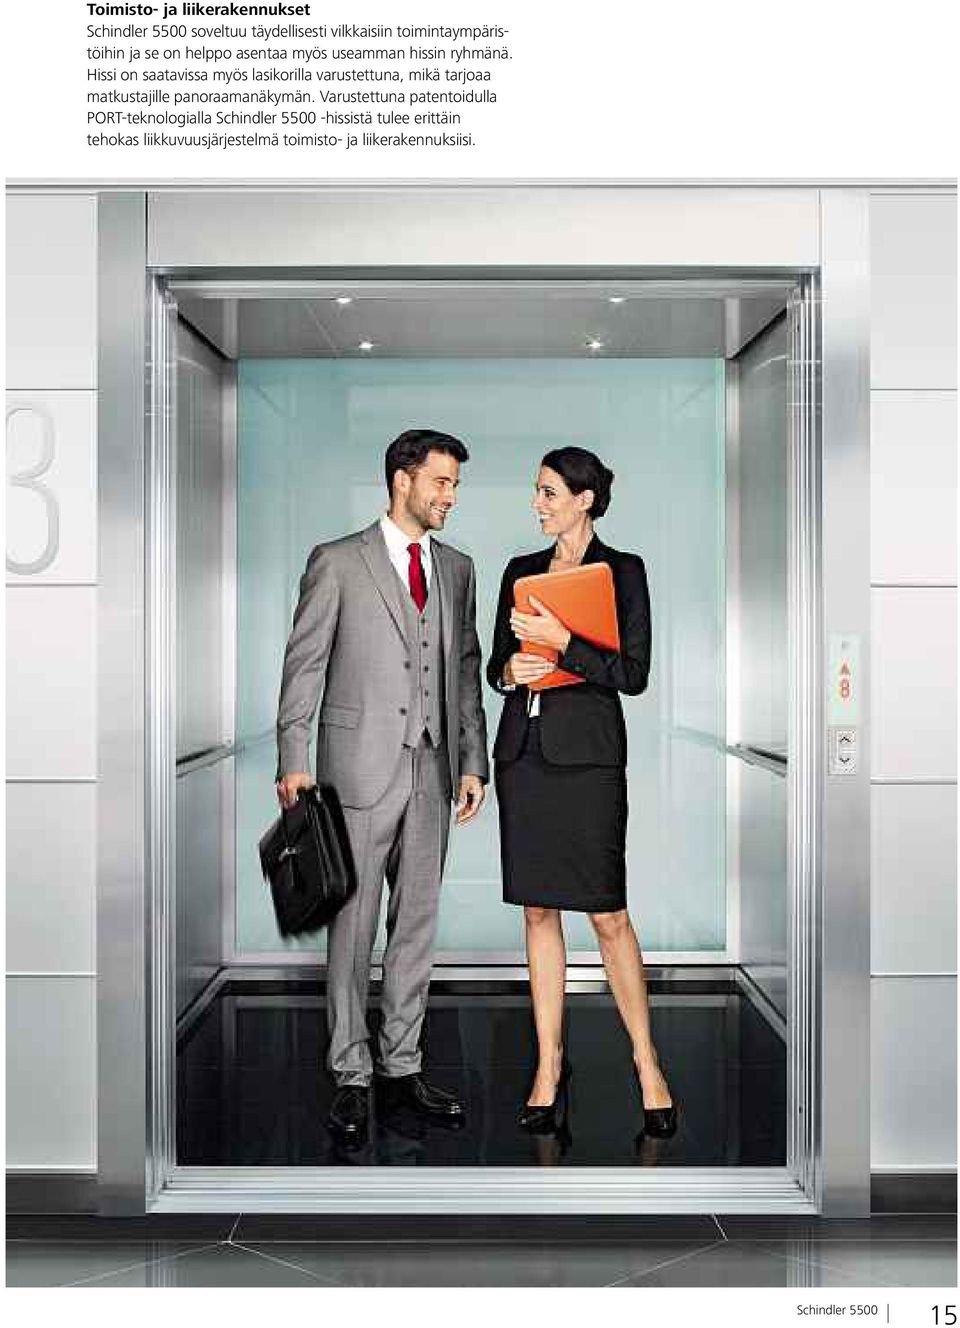 Hissi on saatavissa myös lasikorilla varustettuna, mikä tarjoaa matkustajille